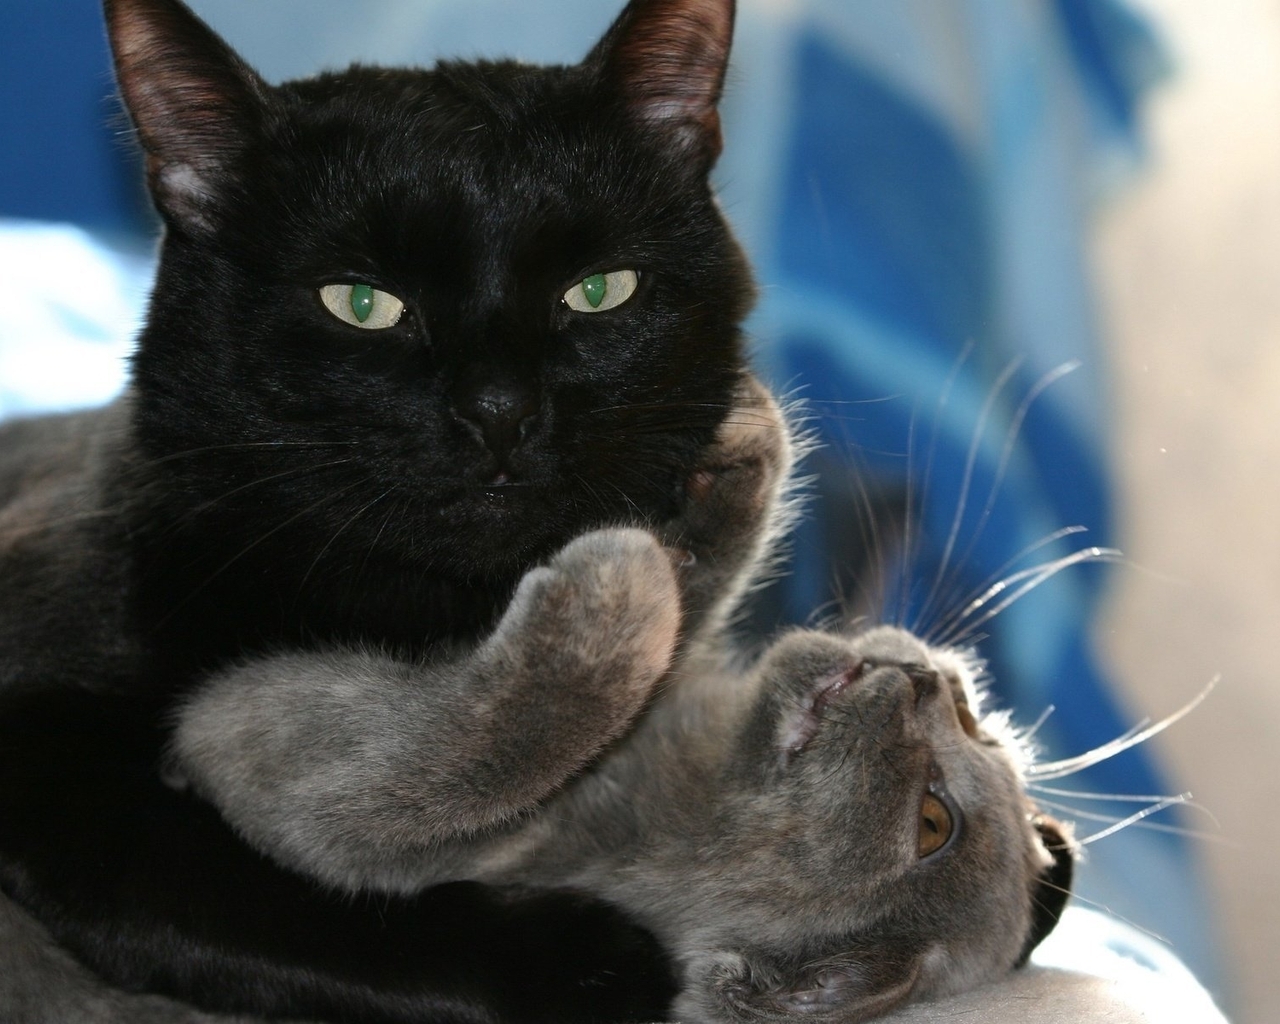 Картинка: Кот, чёрный, кошка, обнимает, играет, сверху, лежит, взгляд, глаза, усы